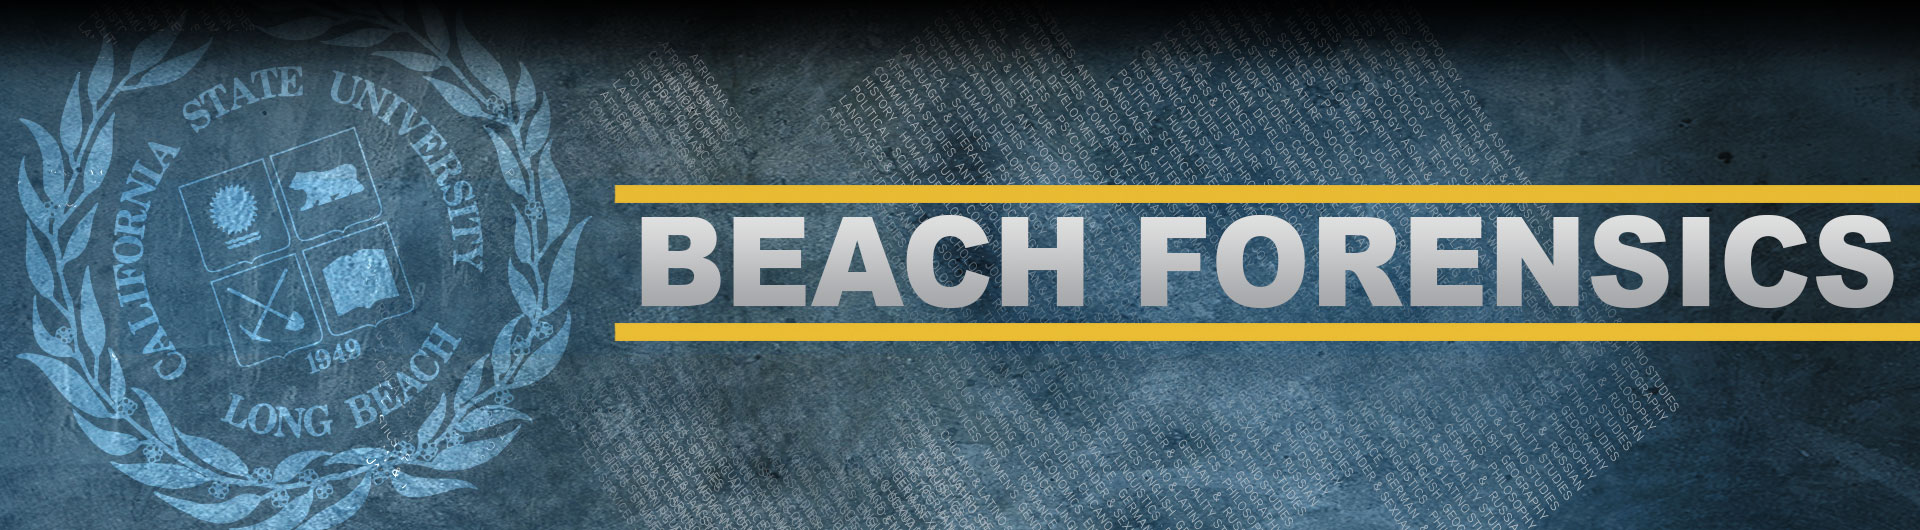 Beach Forensics